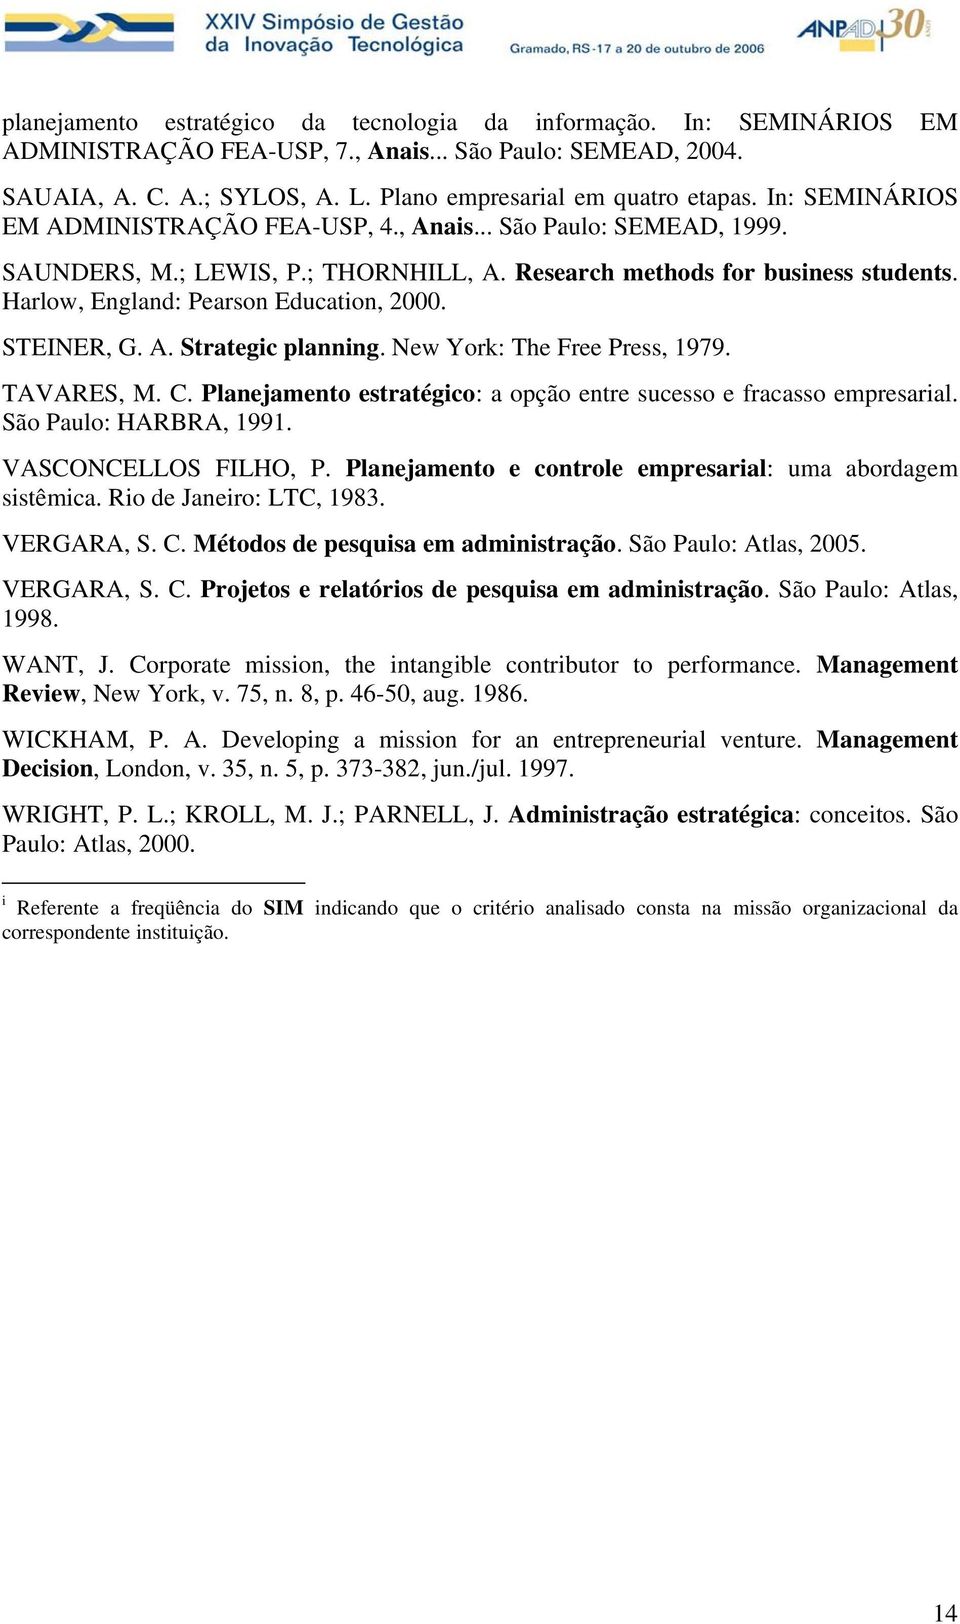 STEINER, G. A. Strategic planning. New York: The Free Press, 1979. TAVARES, M. C. Planejamento estratégico: a opção entre sucesso e fracasso empresarial. São Paulo: HARBRA, 1991.